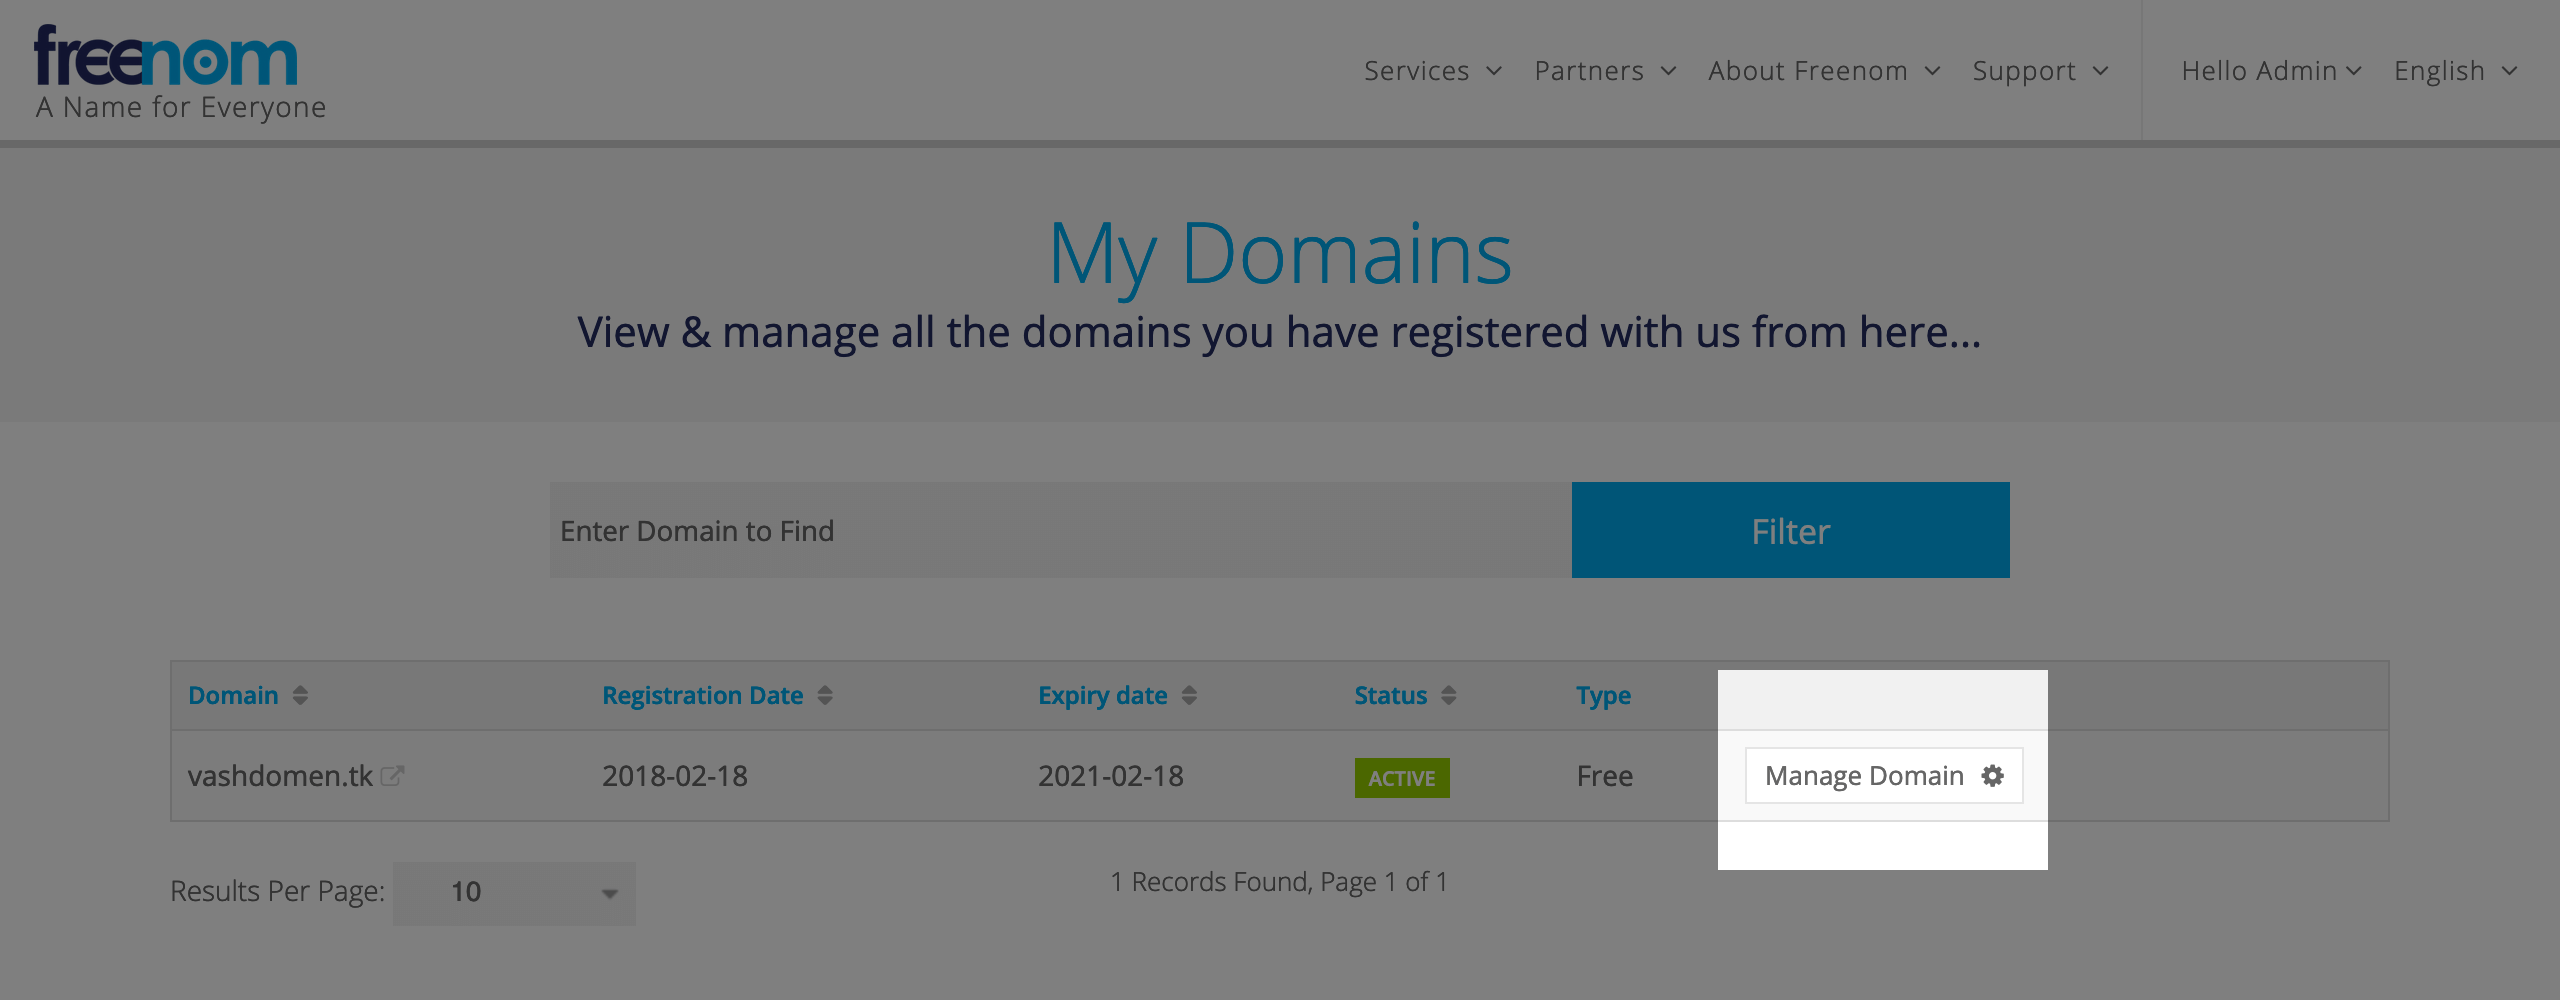 Кнопка «Manage Domain» у списку з доменами